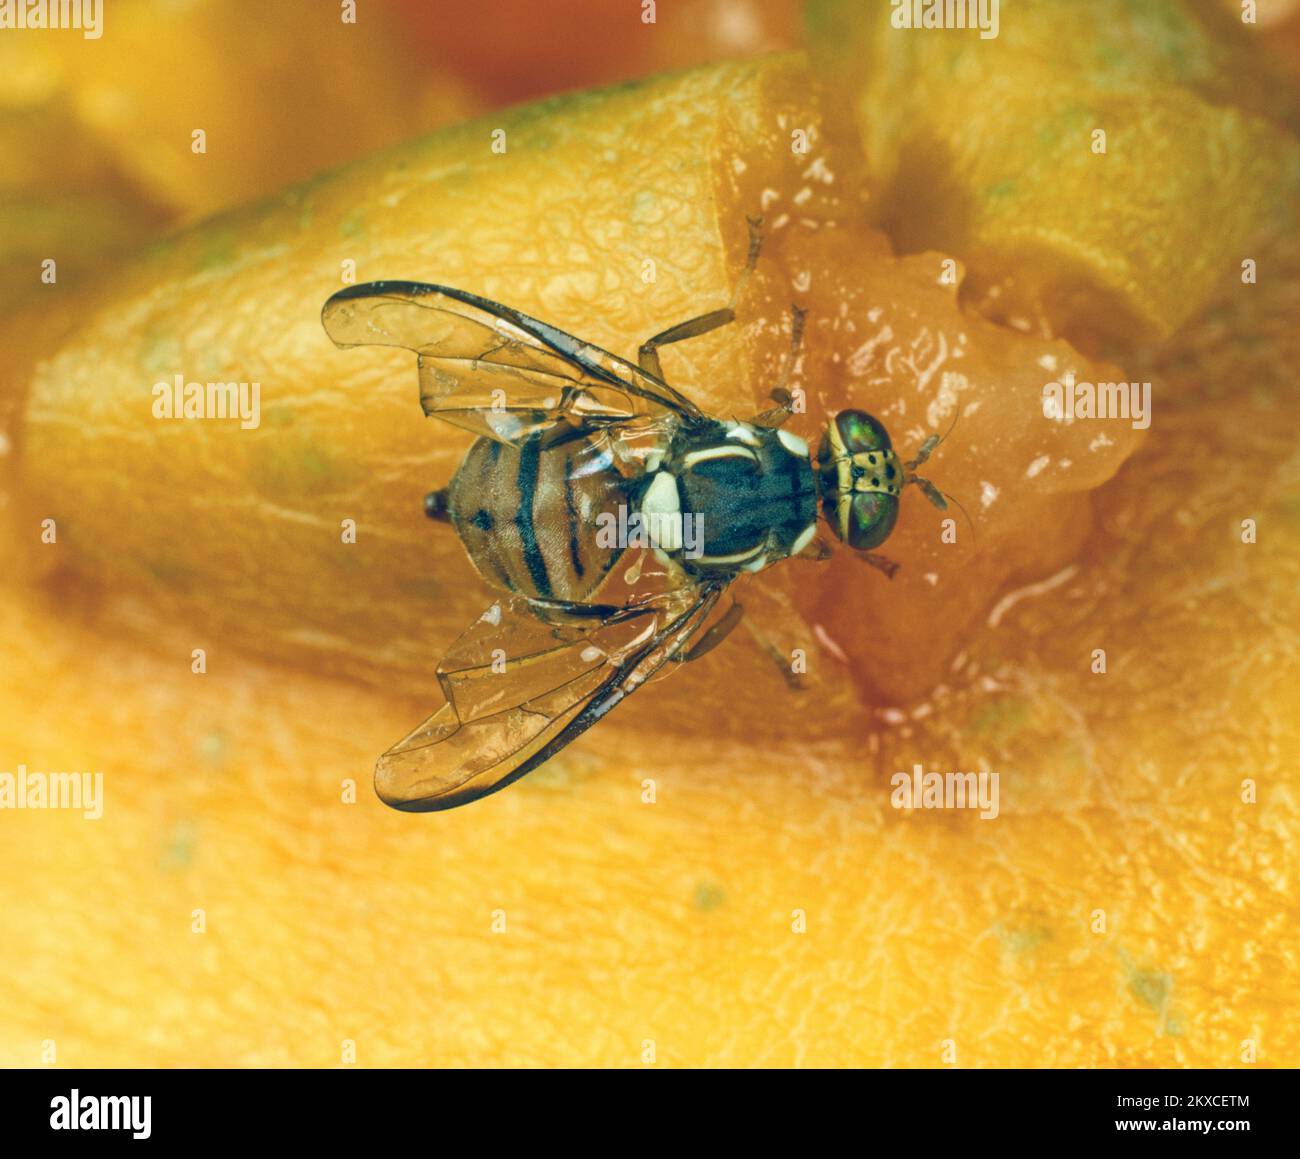 Mouche de fruits orientale (Bactrocera dorsalis) un insecte adulte de mouche sur la surface d'un fruit de papaye Banque D'Images